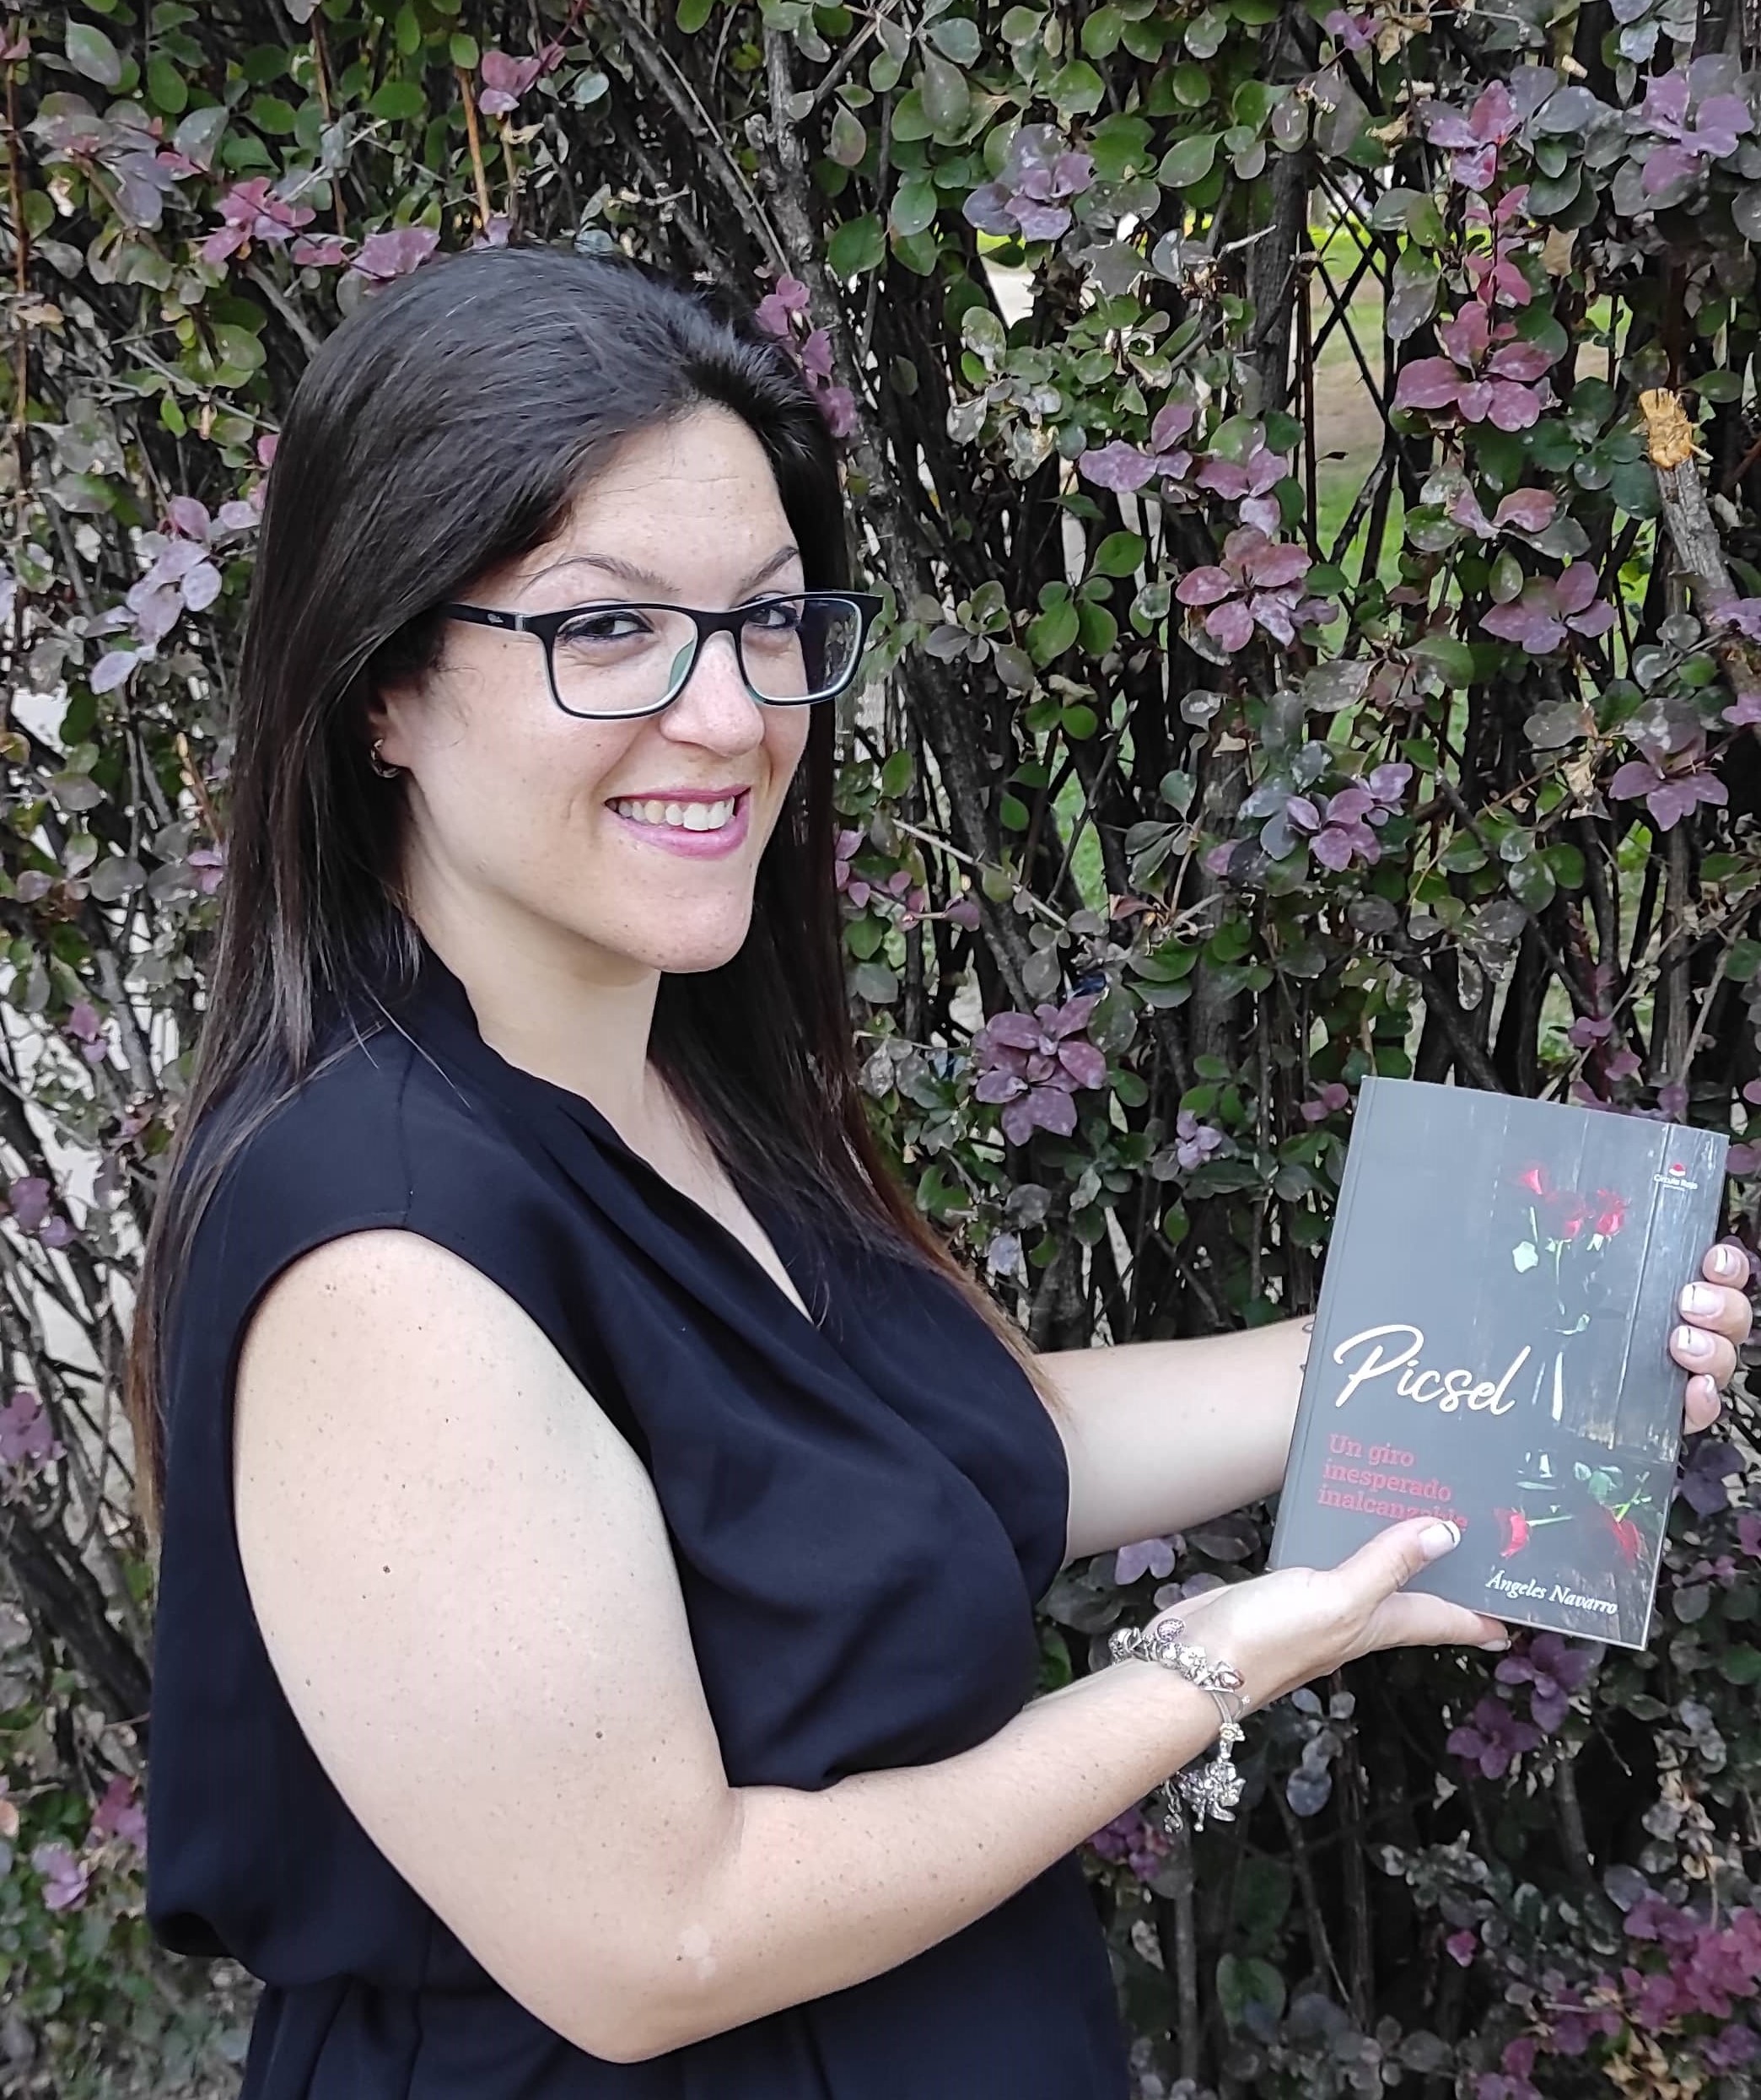 Conoce a Ángeles Navarro autora de “Picsel”, publicado por la editorial Círculo Rojo.